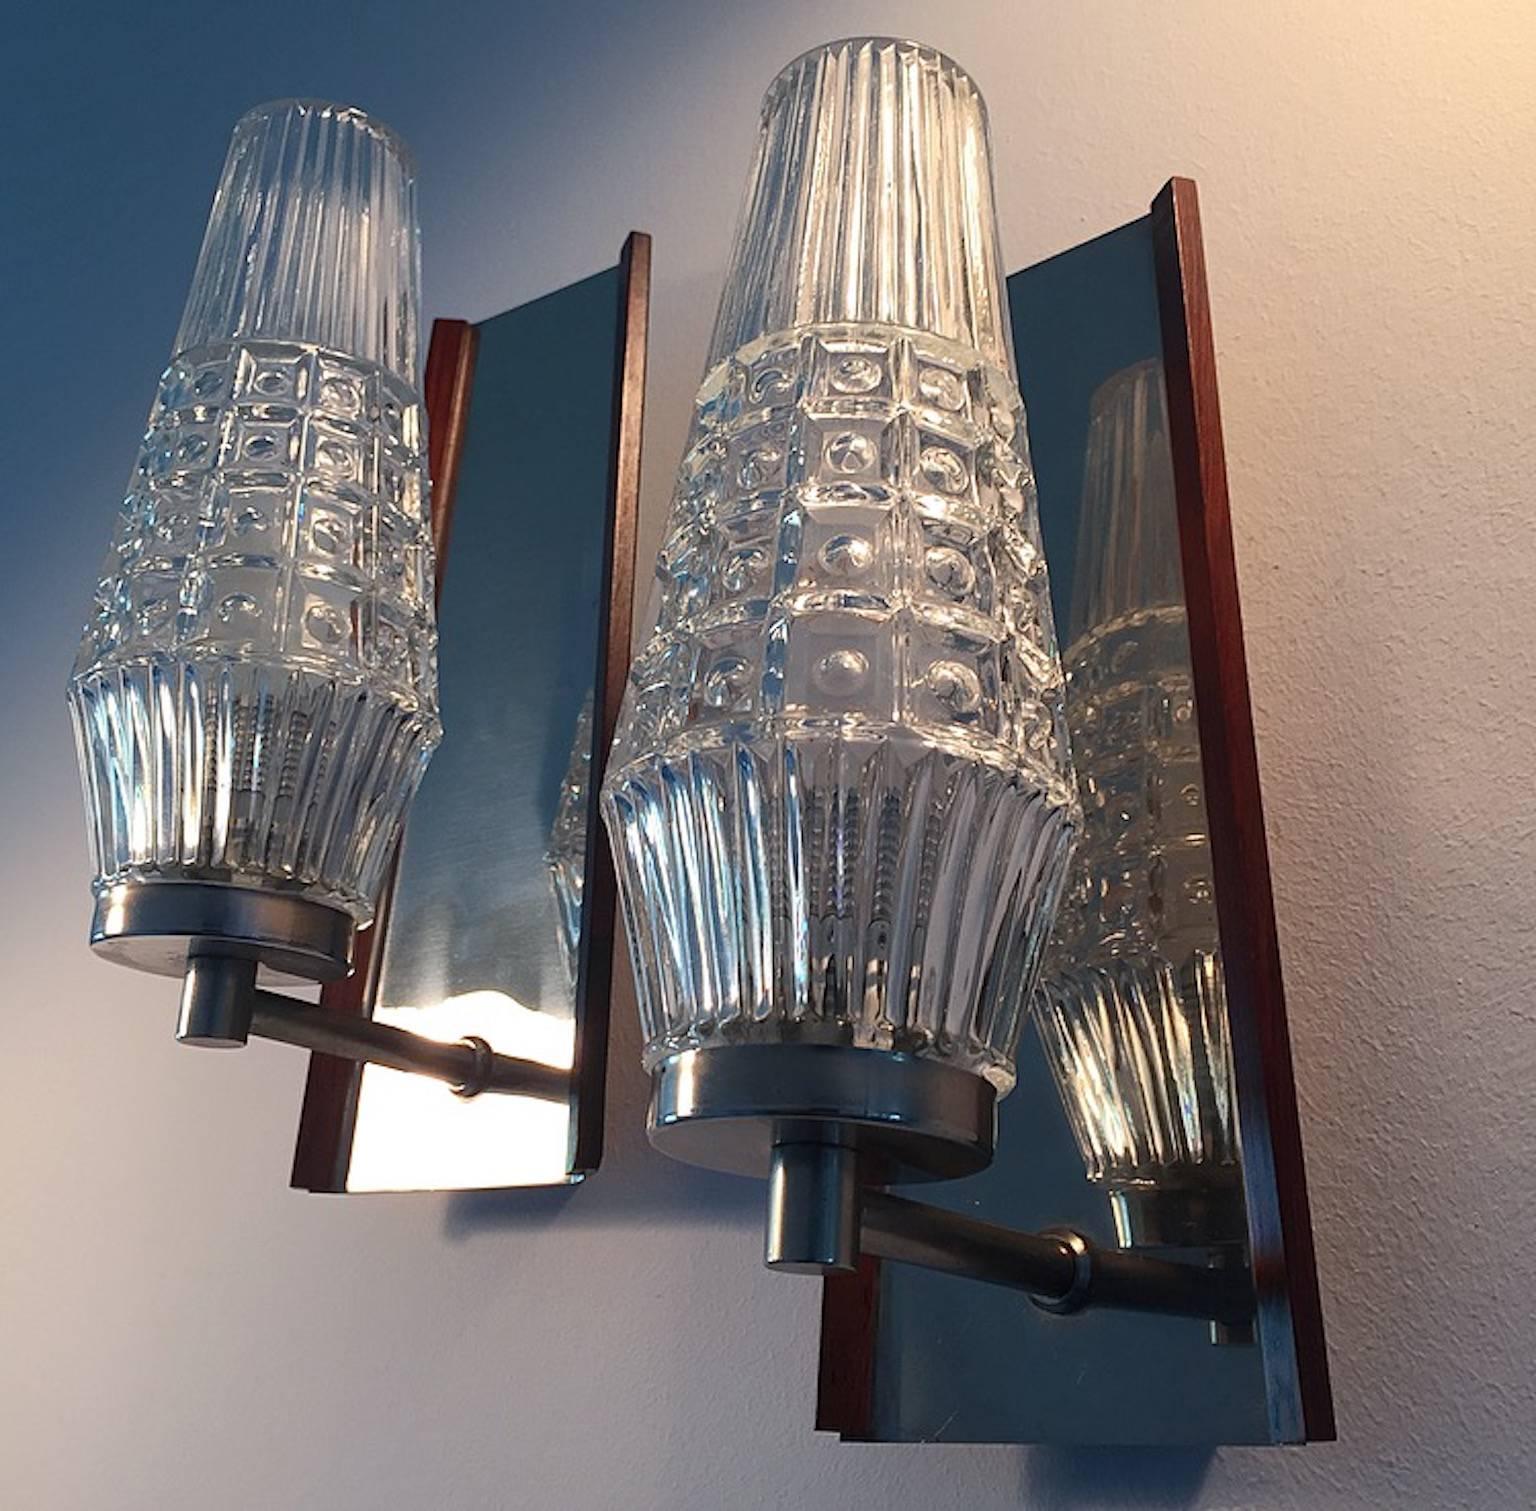 Eine schöne Reihe von dänischen Wandleuchter zugeschrieben Vitrika und Orrefors Glas.

Konisch geformter Sockel, der das Licht wie in einem Spiegel reflektiert. Beide Seiten der Leuchter sind mit einer dünnen Palisanderholzleiste versehen, um die